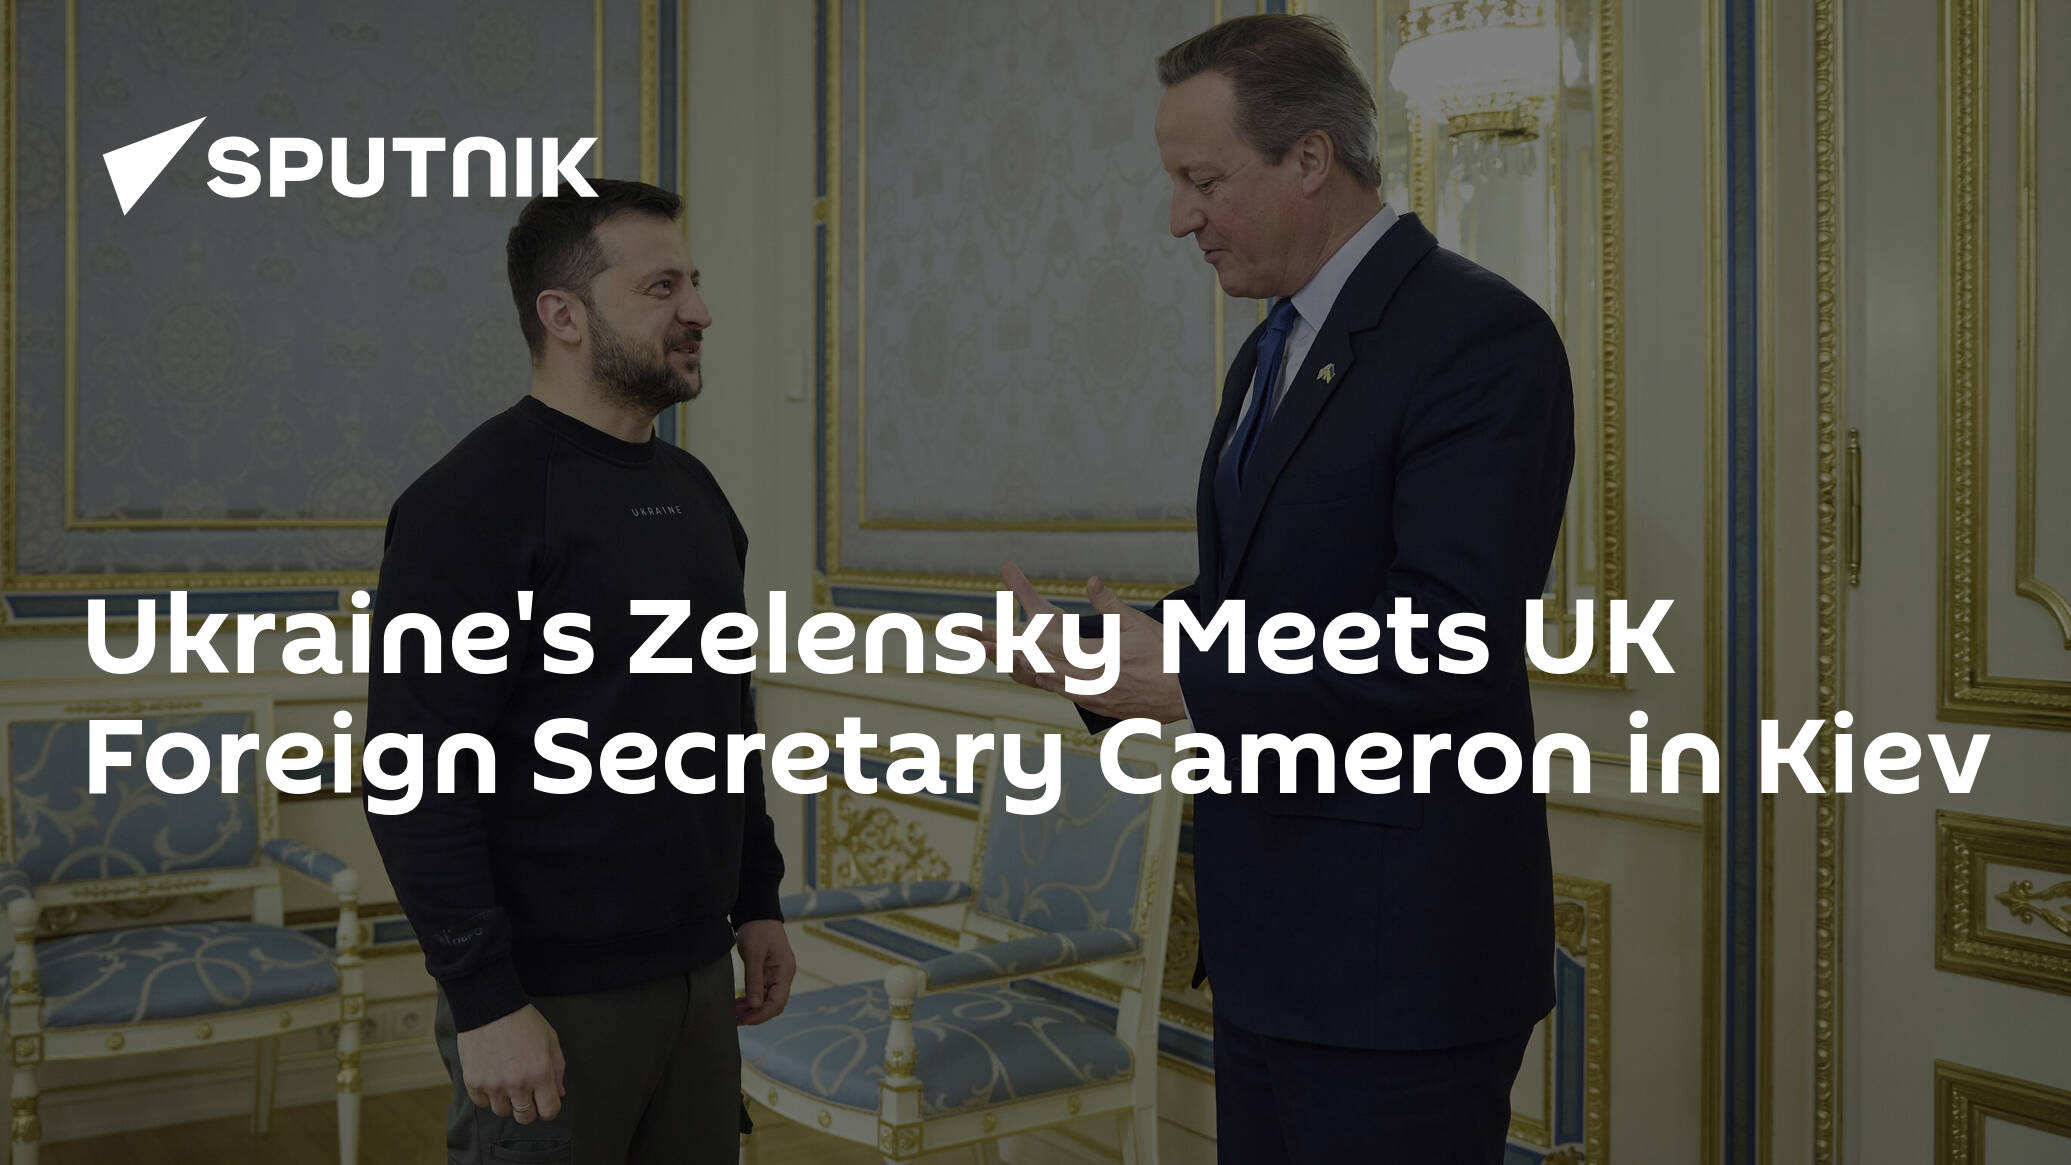 Ukraine's Zelensky Meets UK Foreign Secretary Cameron in Kiev